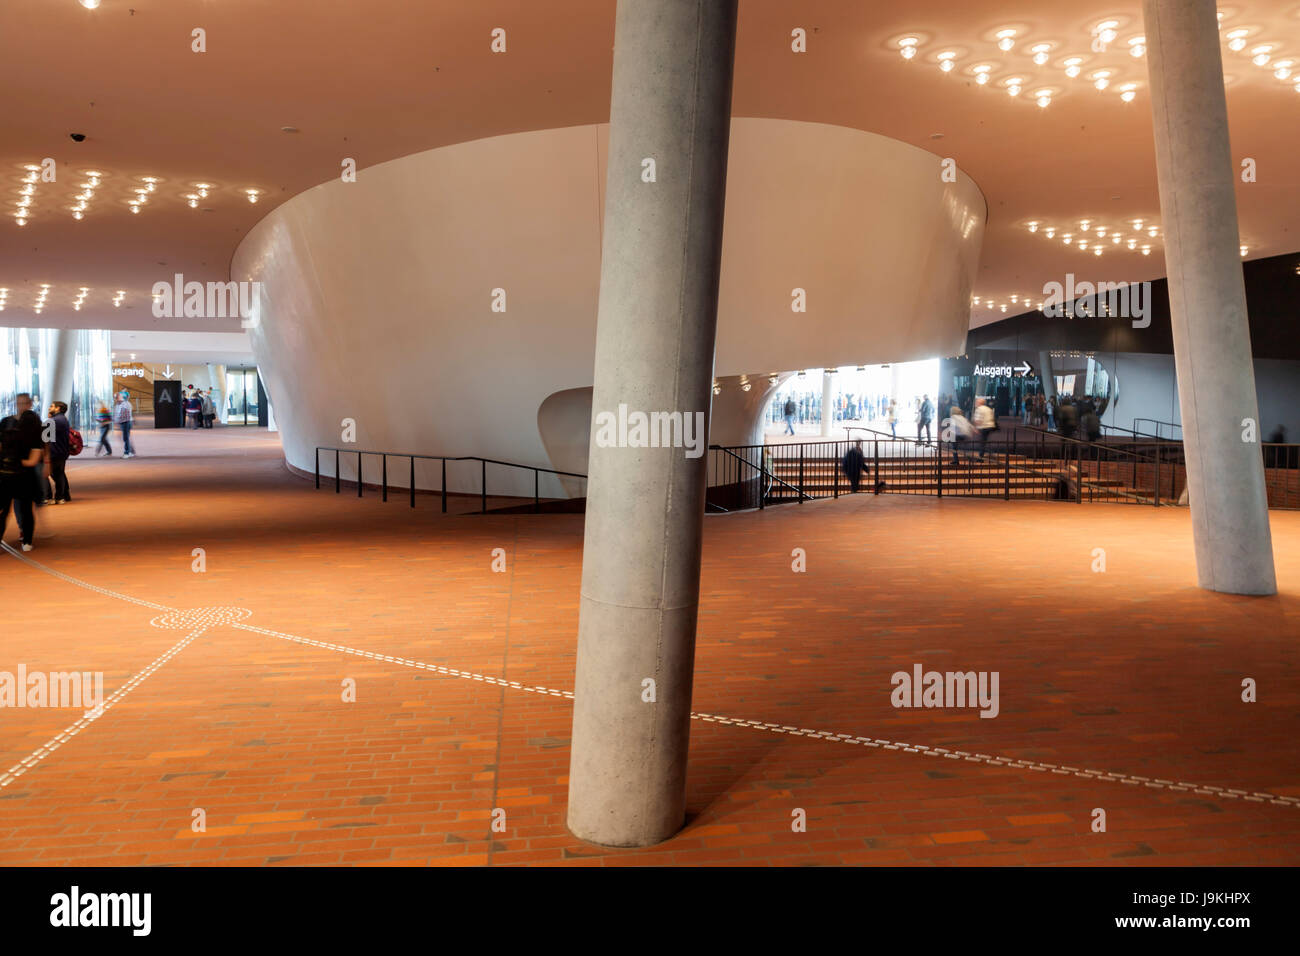 Hambourg, Allemagne - 17 mai 2017 : La Plaza, zone centrale autour de l'escalier de l'Elbe Philharmonic Hall construit par les architectes Herzog & de Meuron Banque D'Images